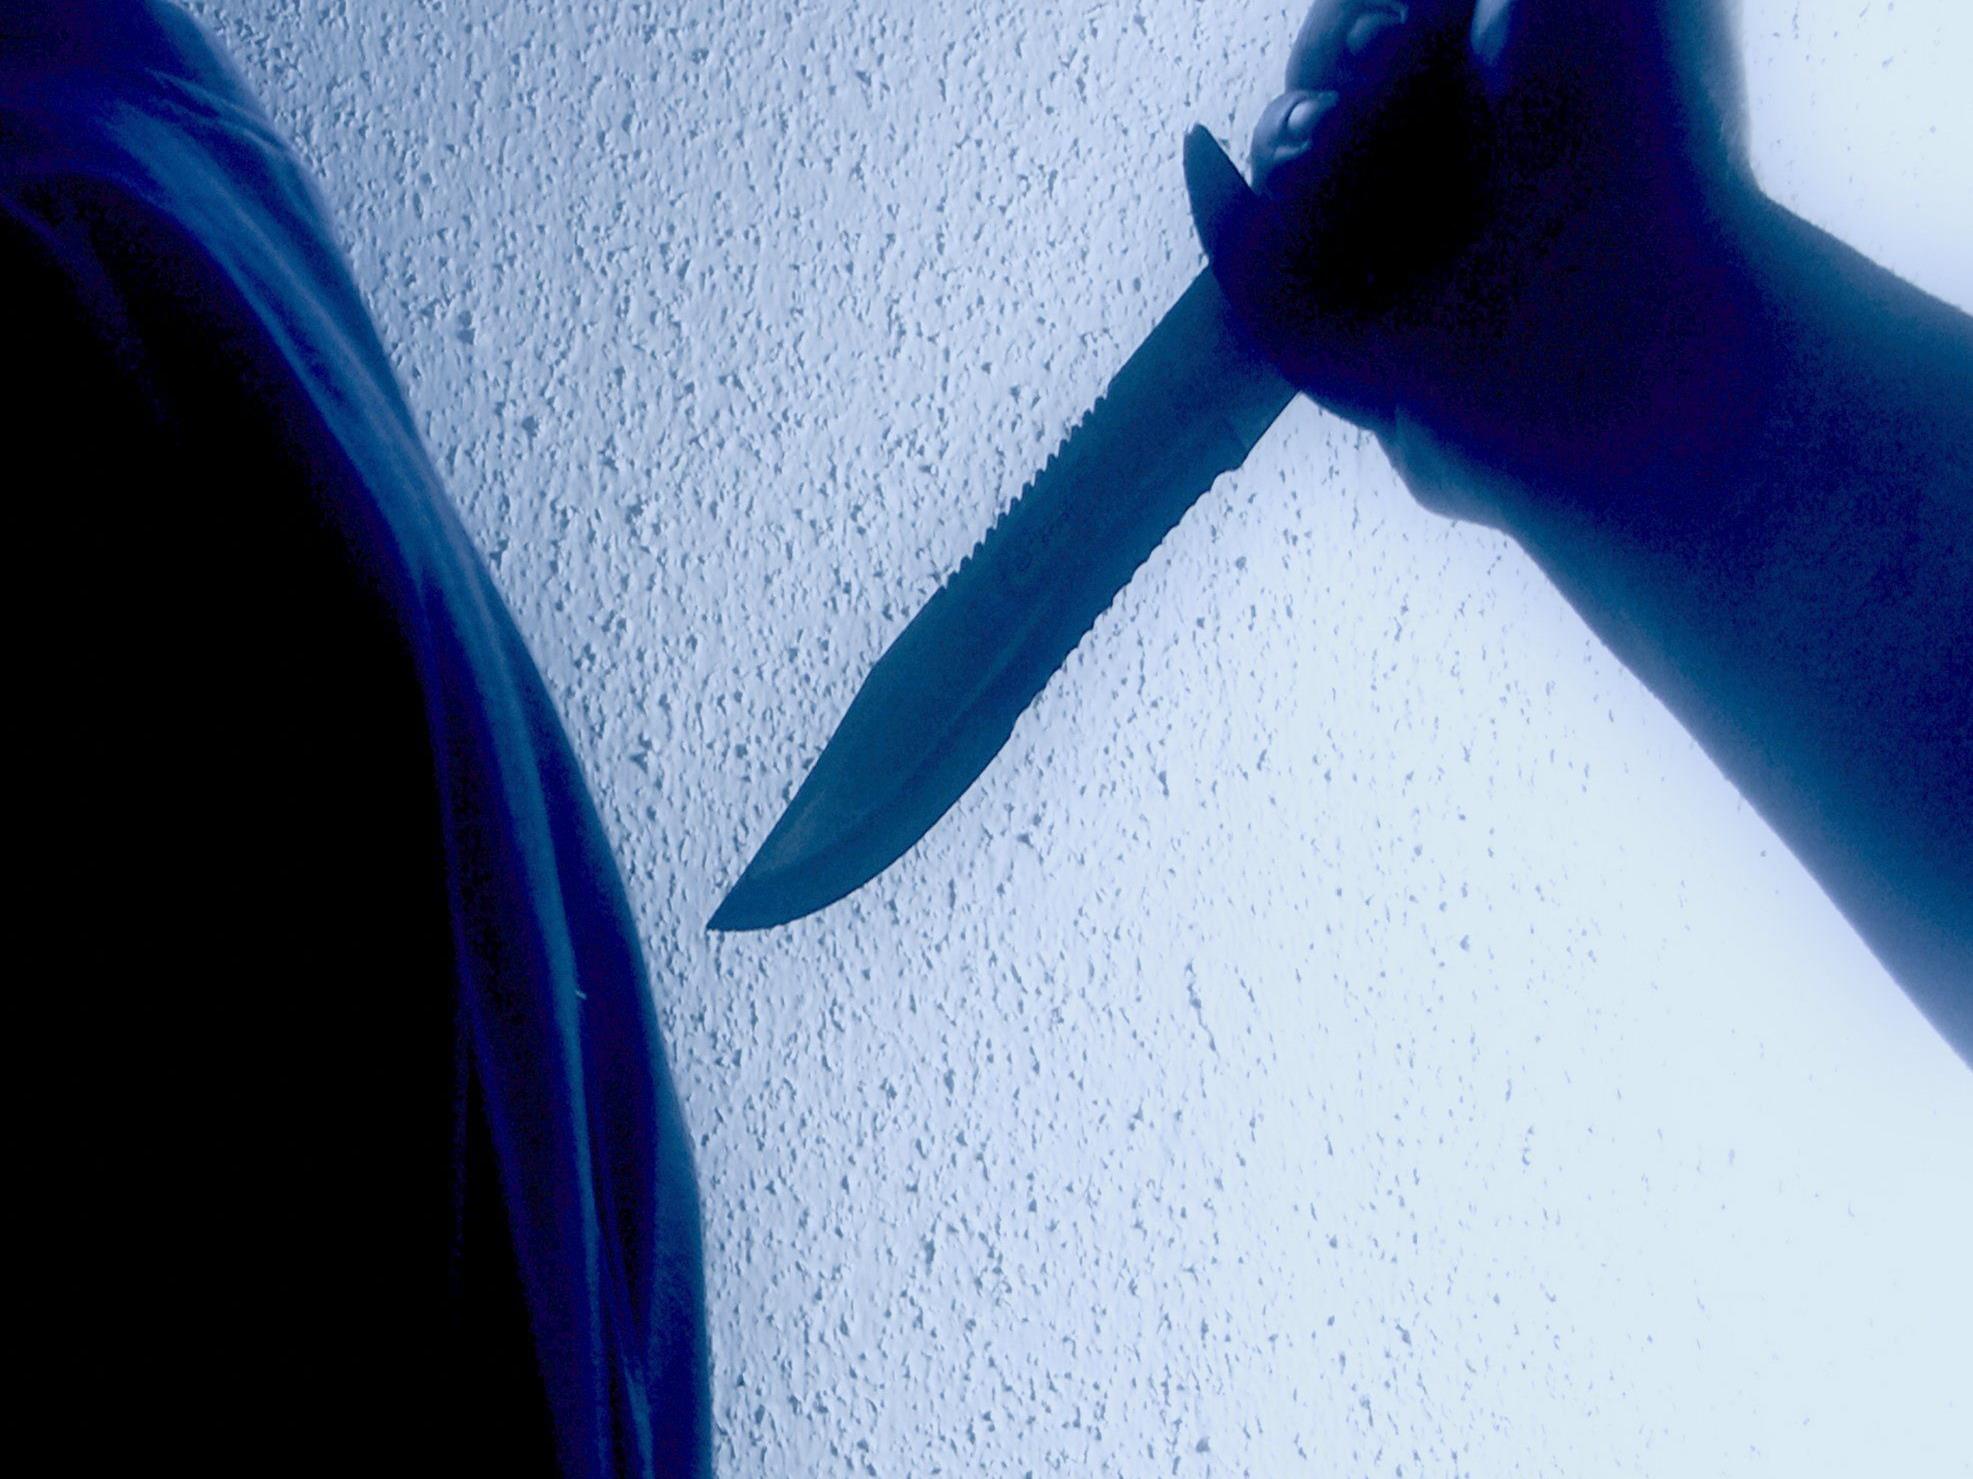 Räuber bedrohten das Opfer mit einem Messer